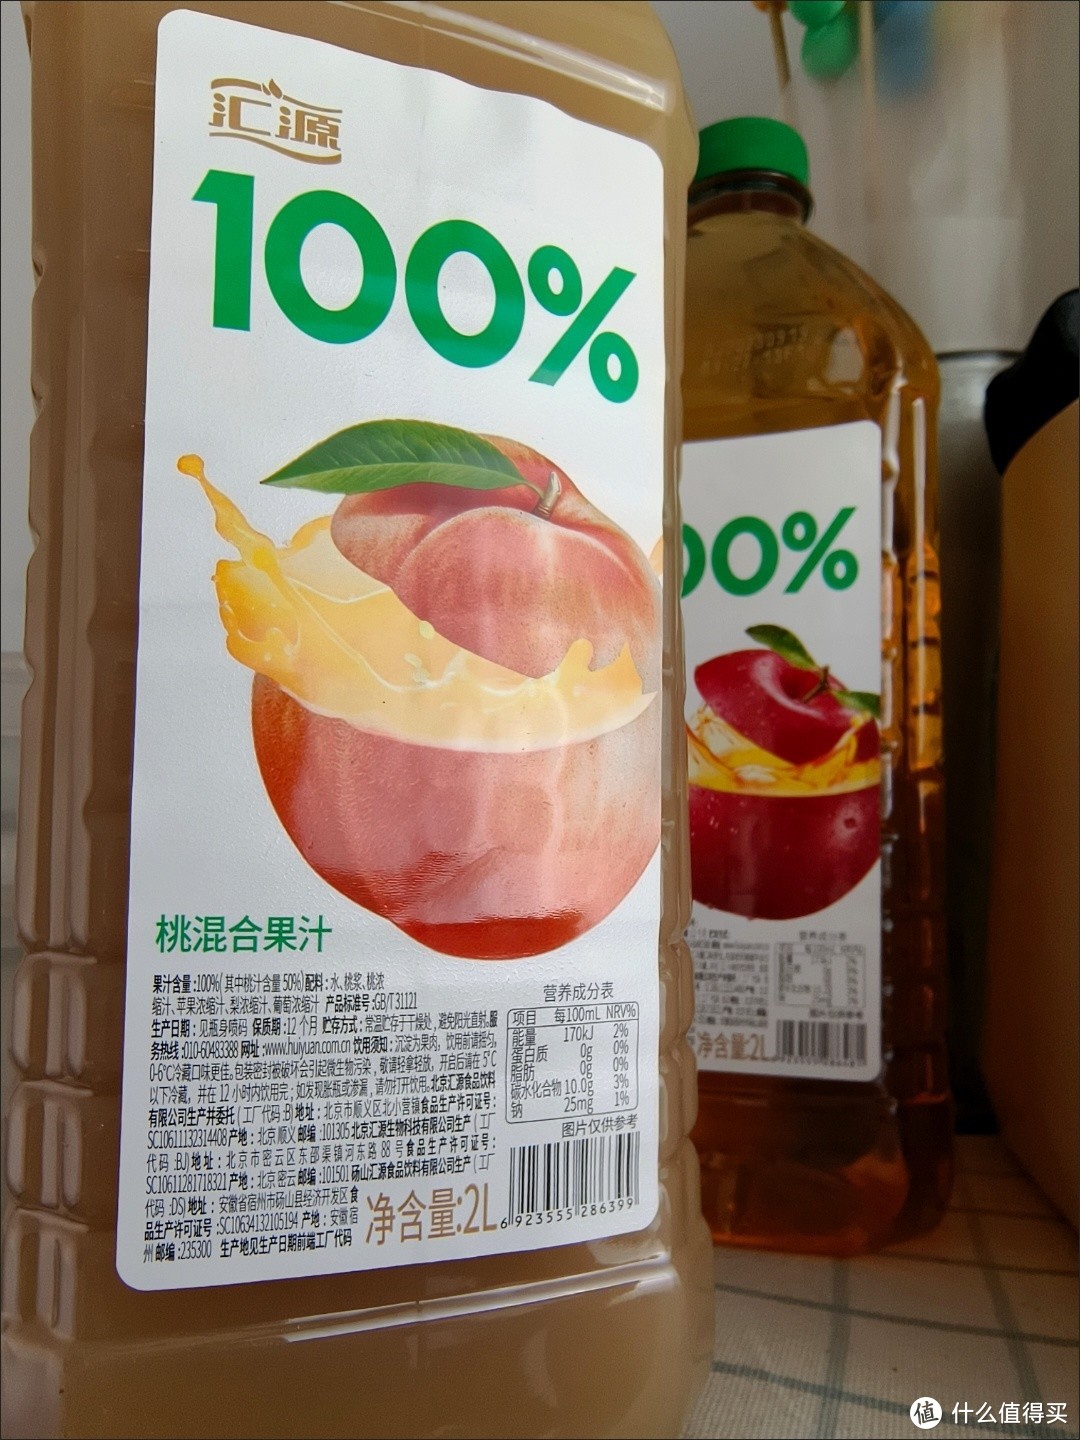 4升汇源100%果汁整箱批发特价，桃汁苹果汁2LX2大瓶饮料饮品，让你的生活更加甜美！

